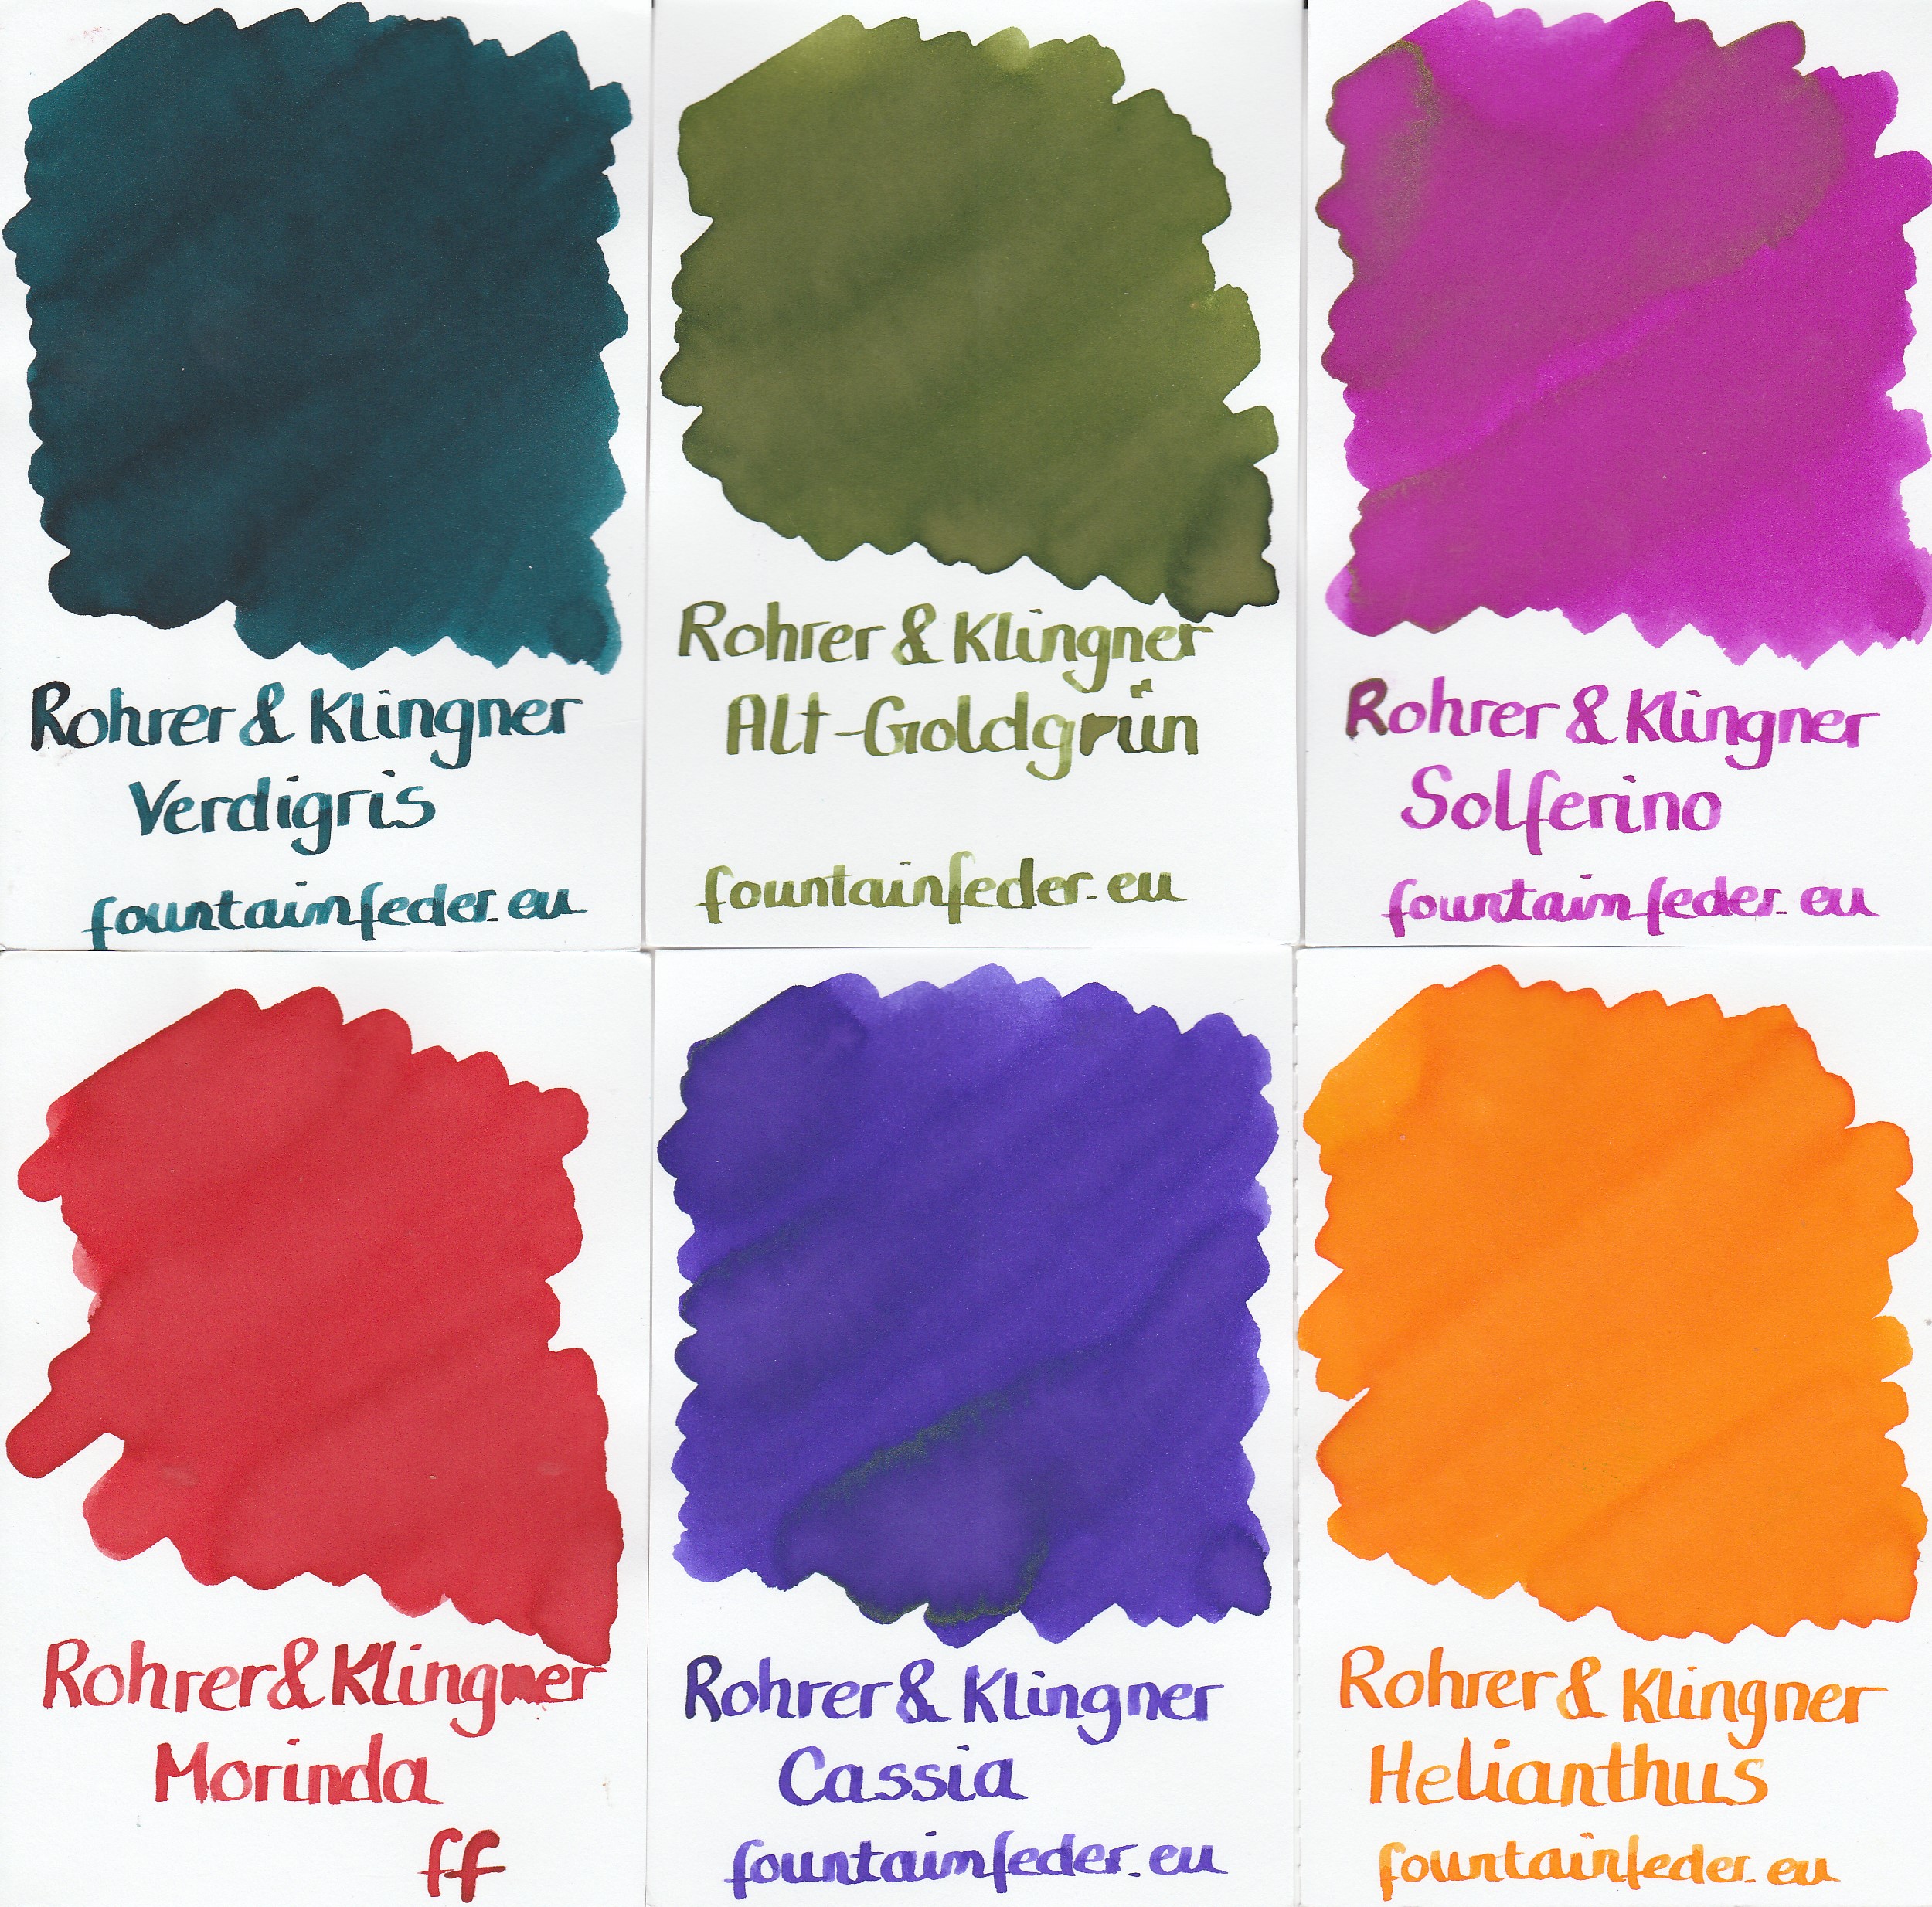 Rohrer & Klingner Magenta Ink Sample 2ml